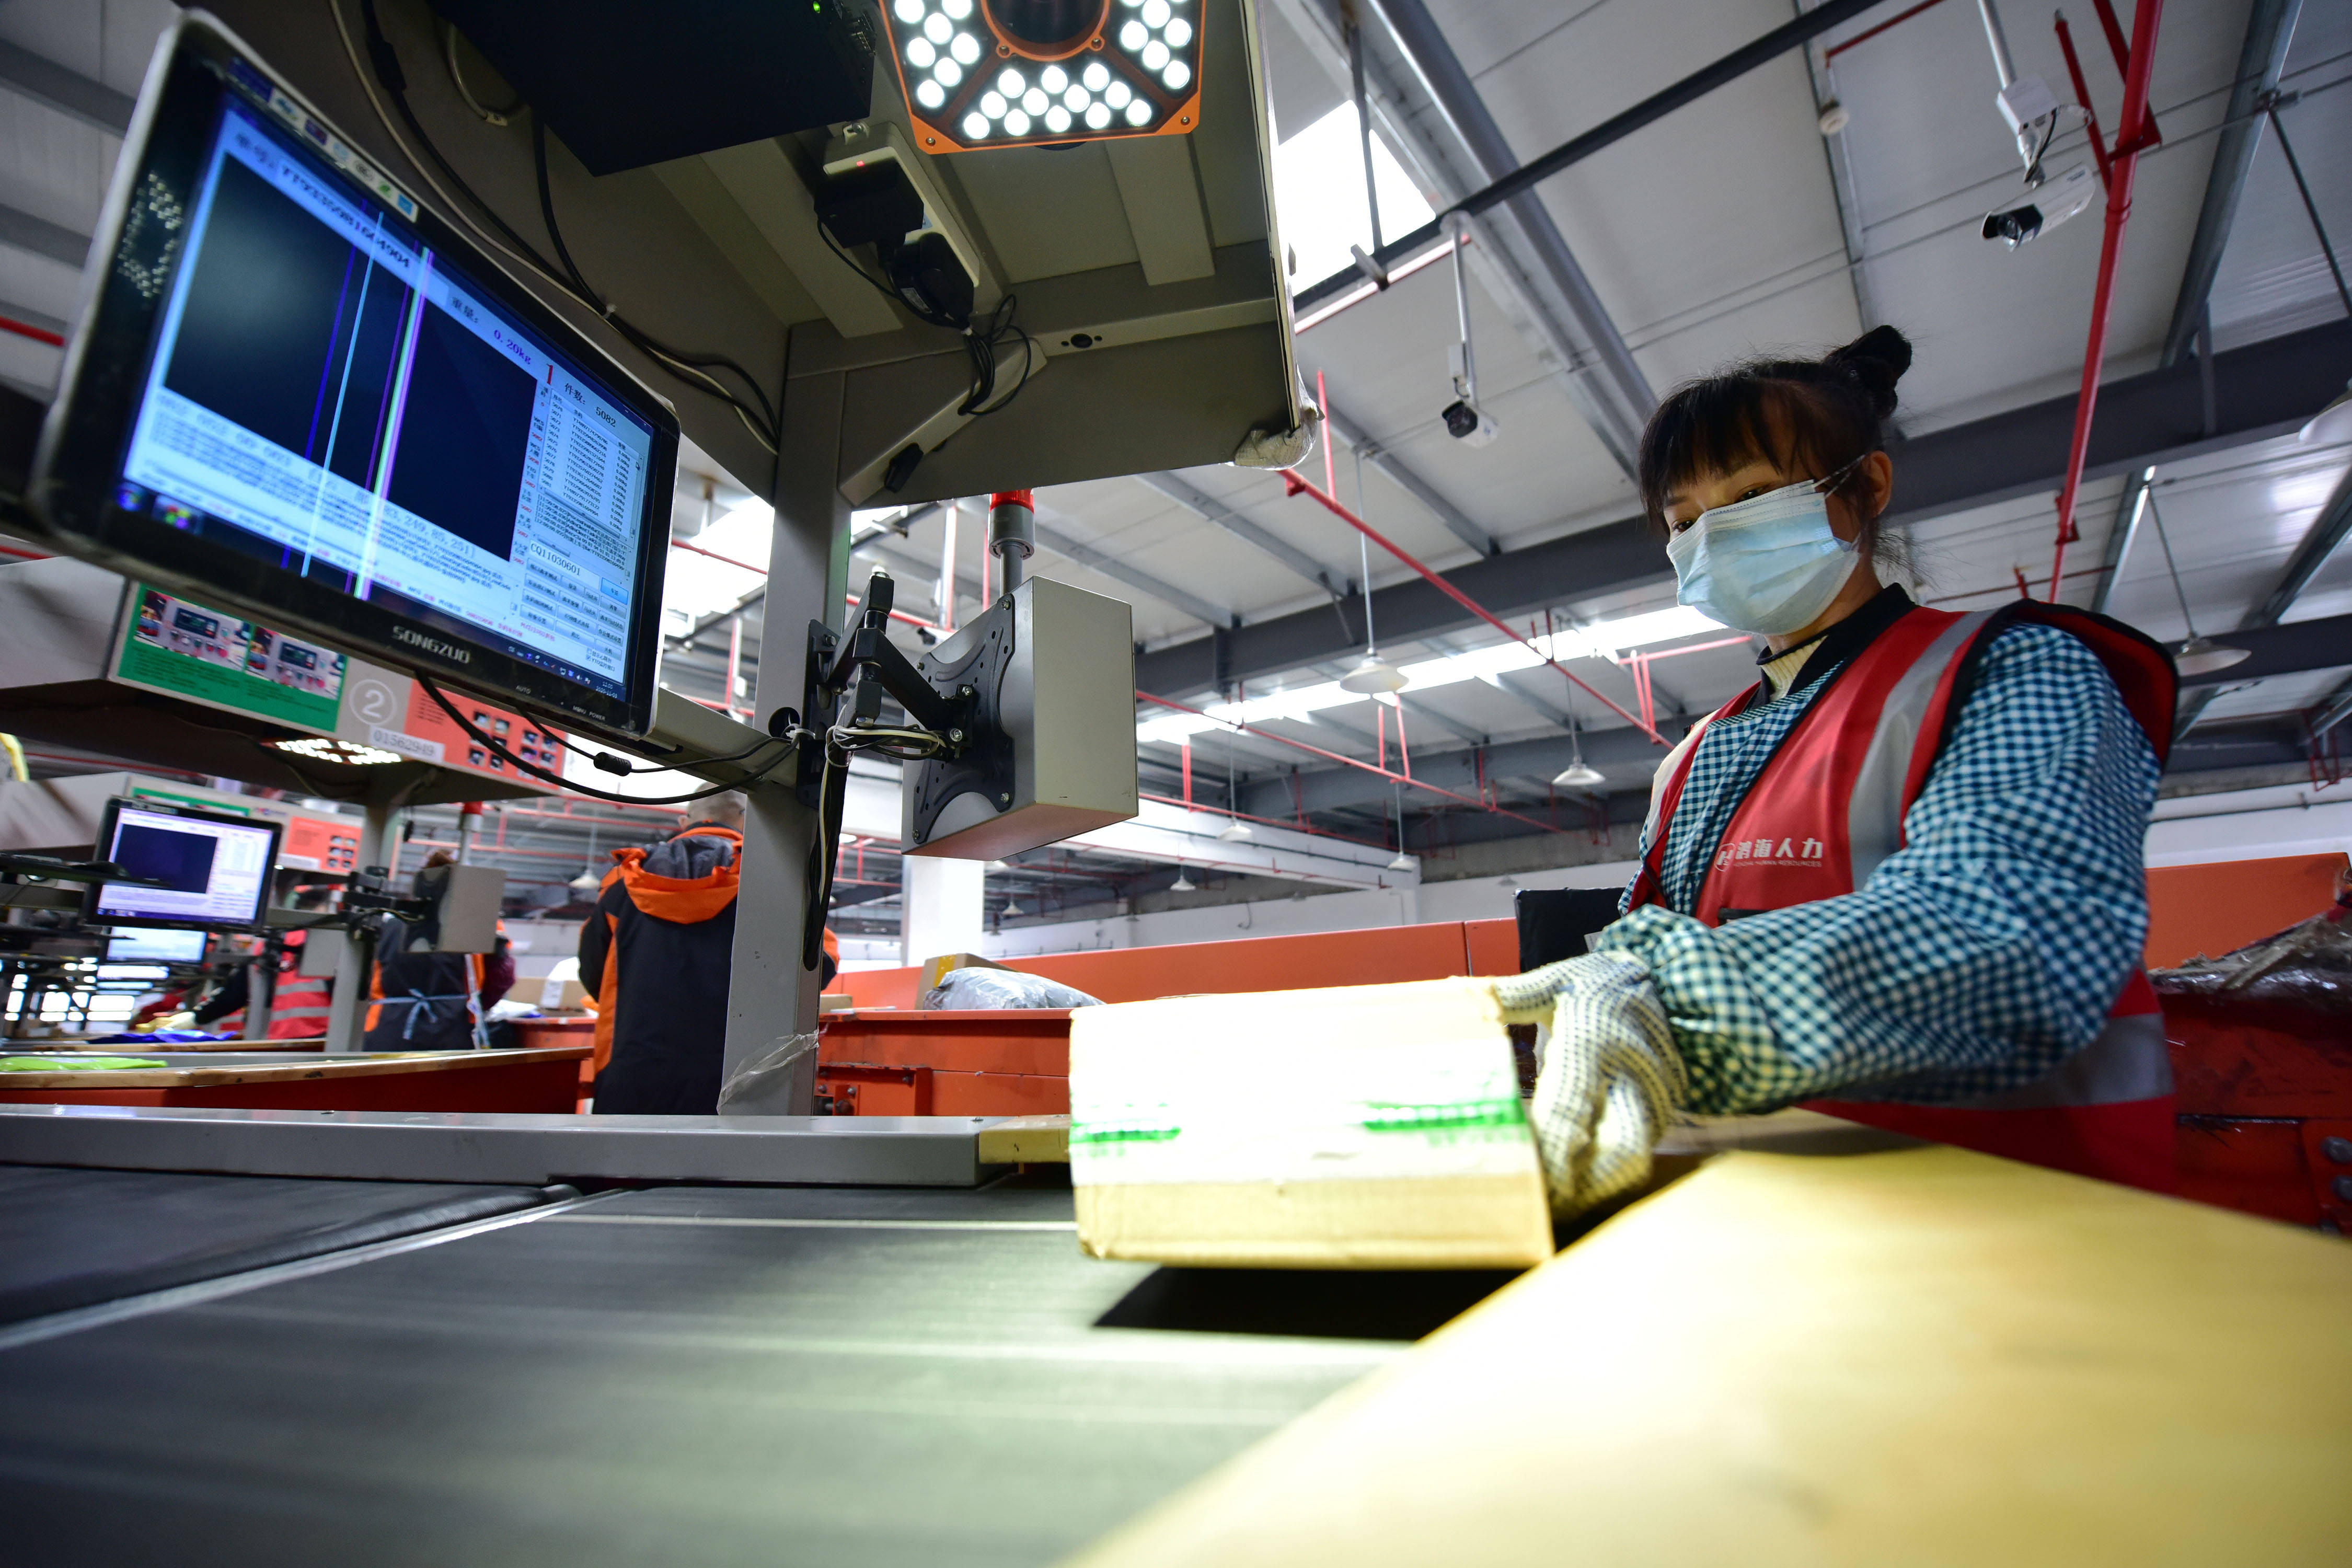 11月3日,在贵州快递物流园一家快递公司,工作人员在扫描分拣快件